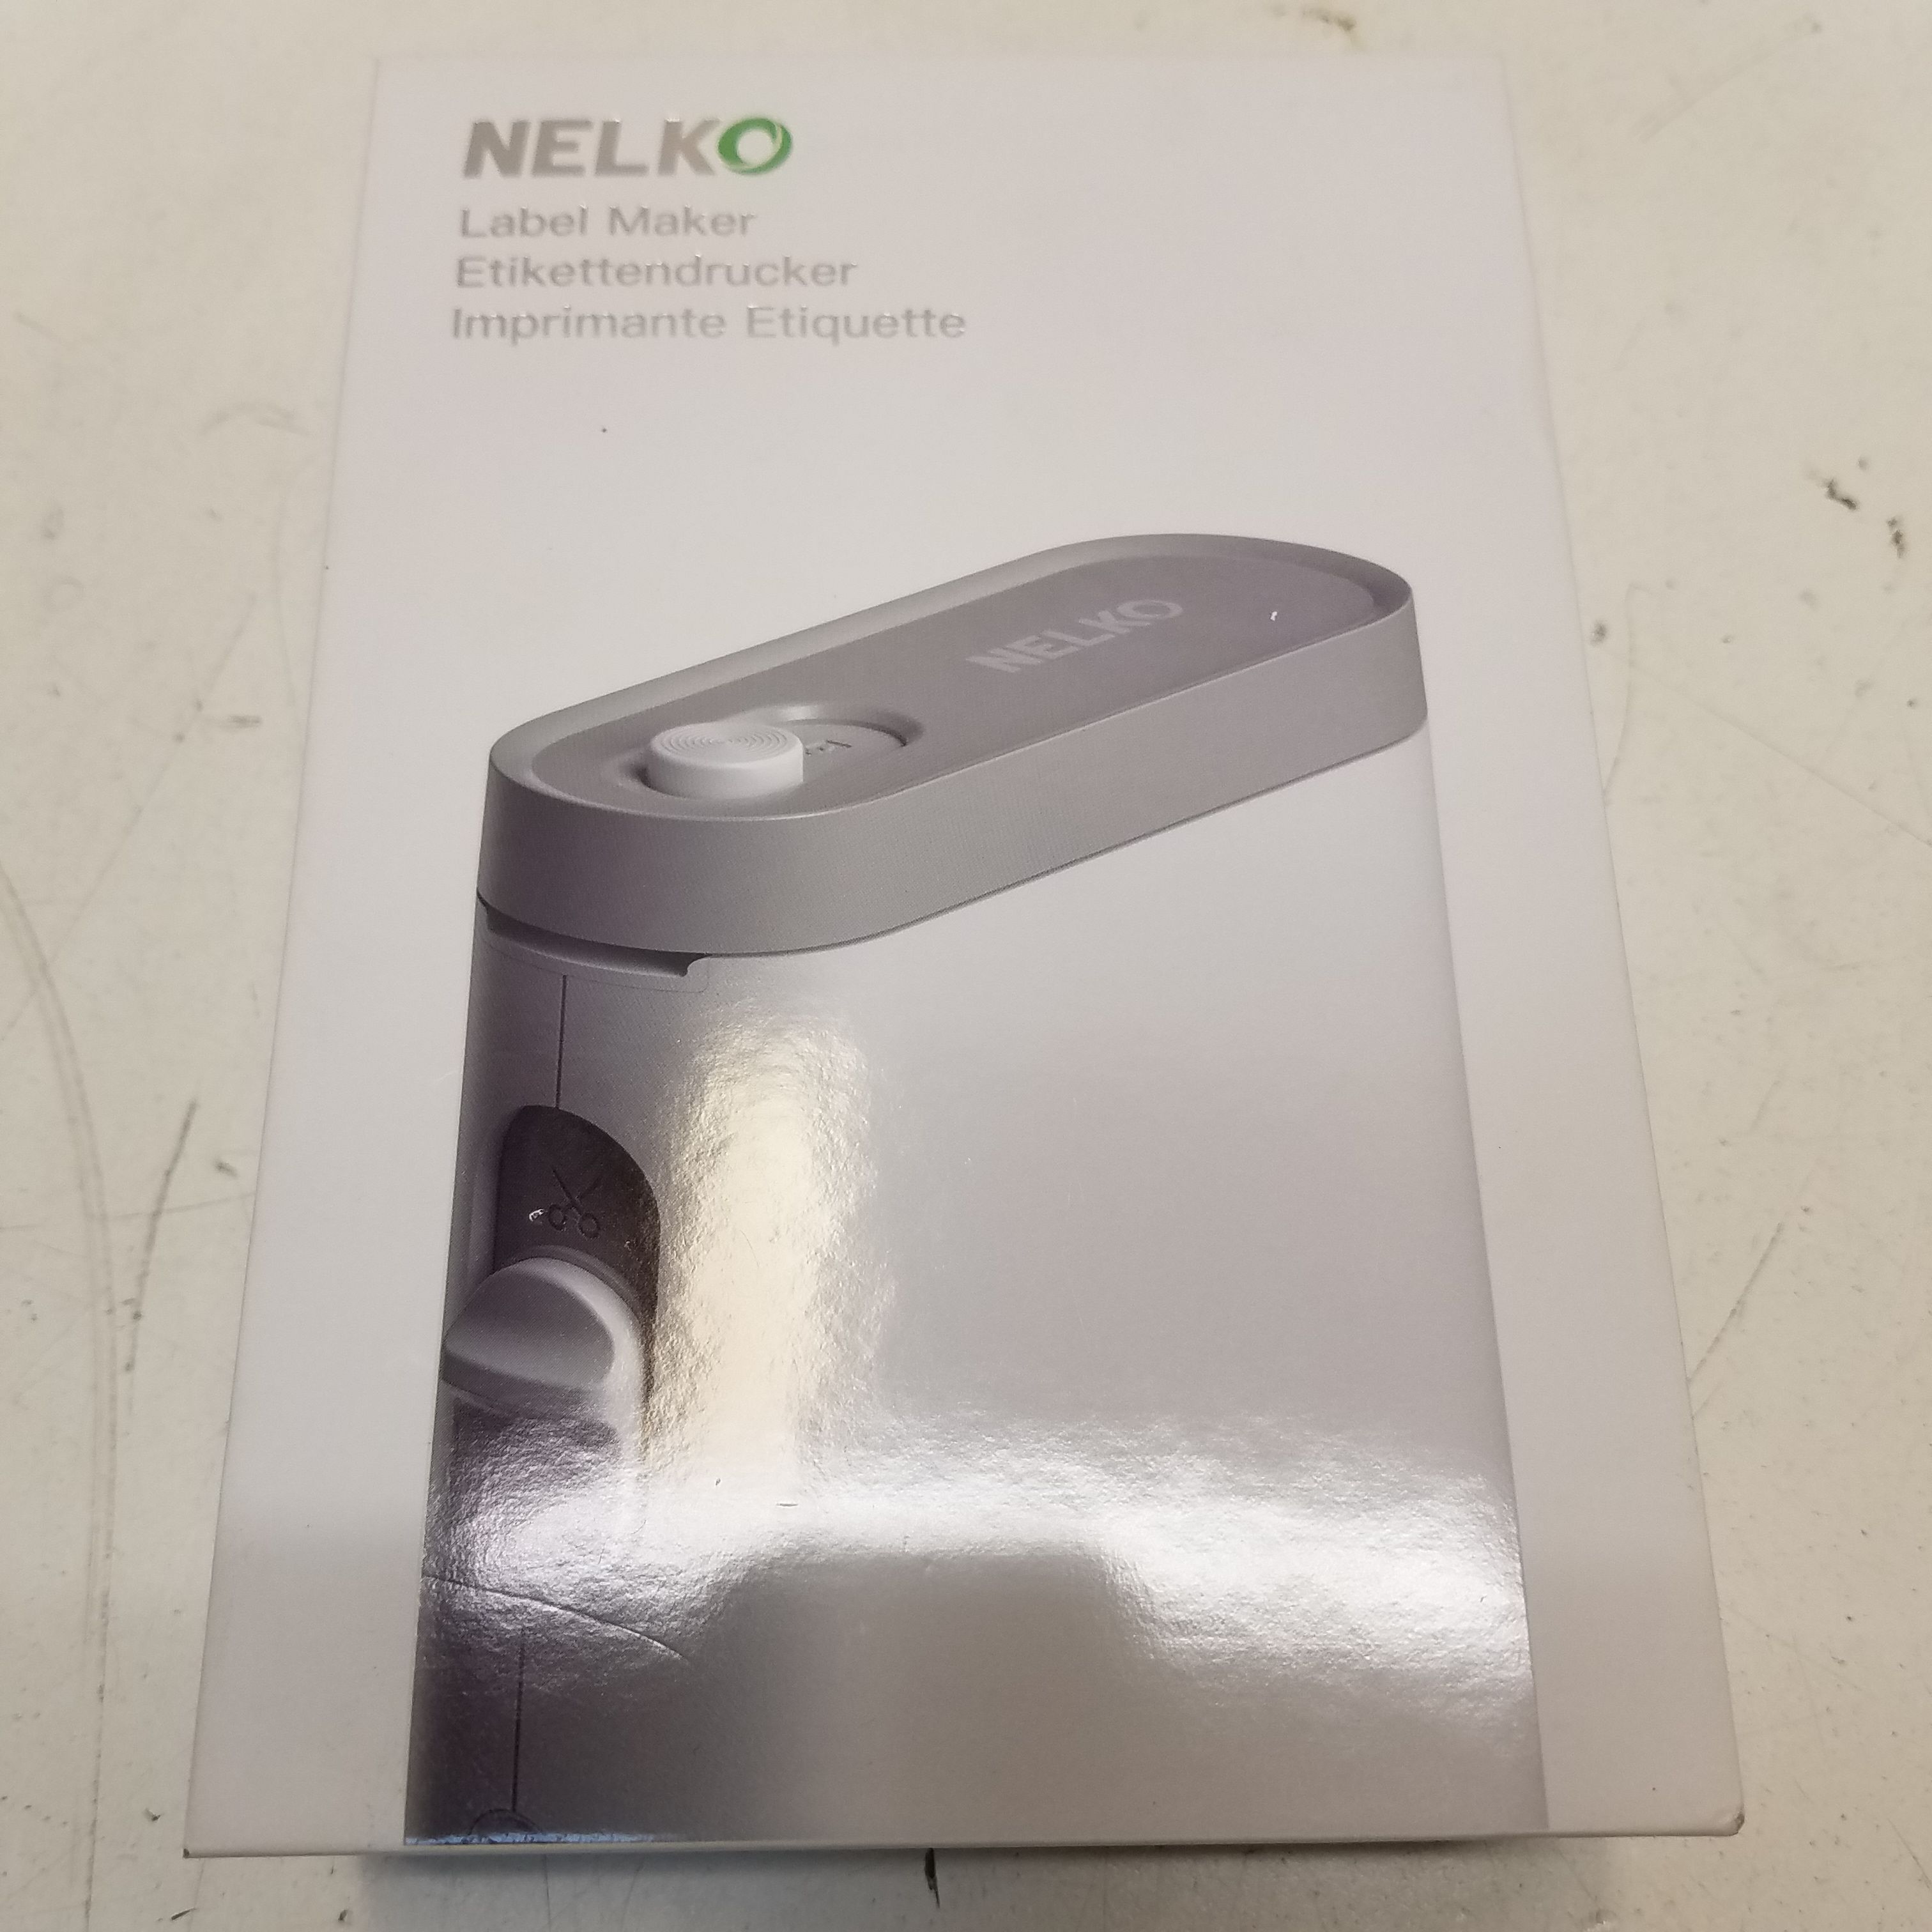 Buy the Nelko Label Maker